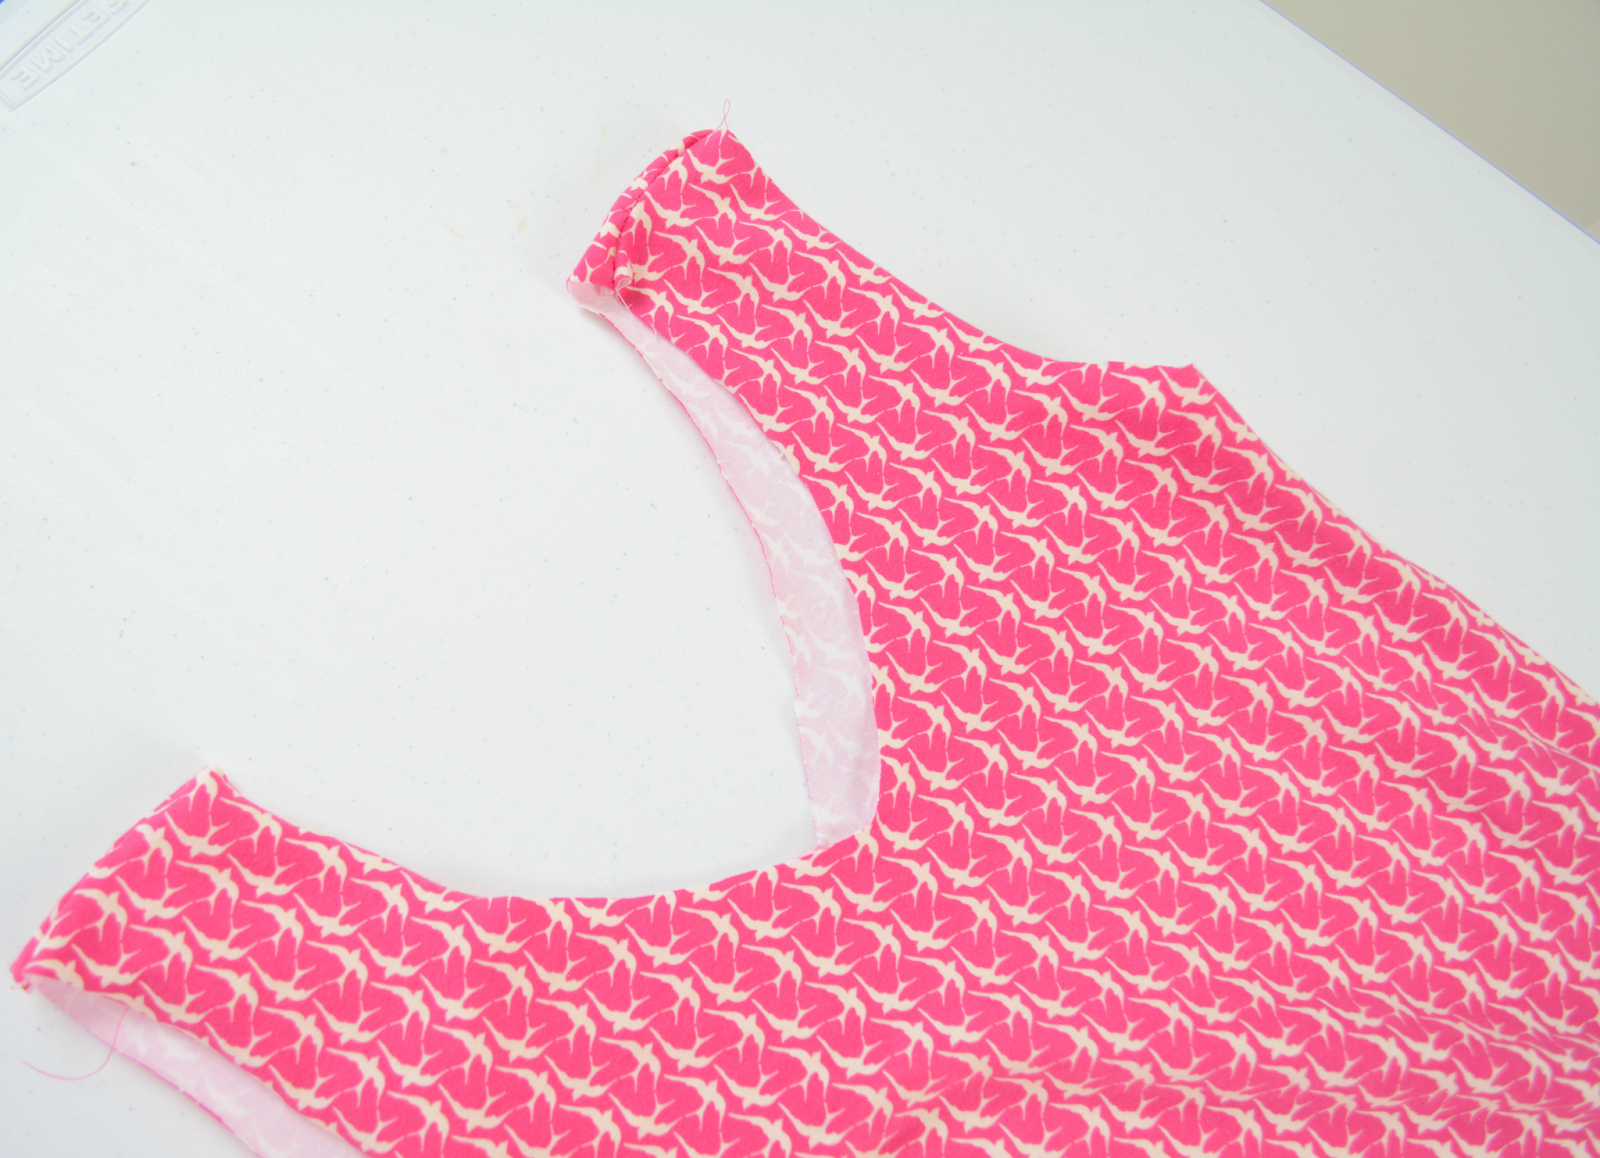 sewing knit maxi dress